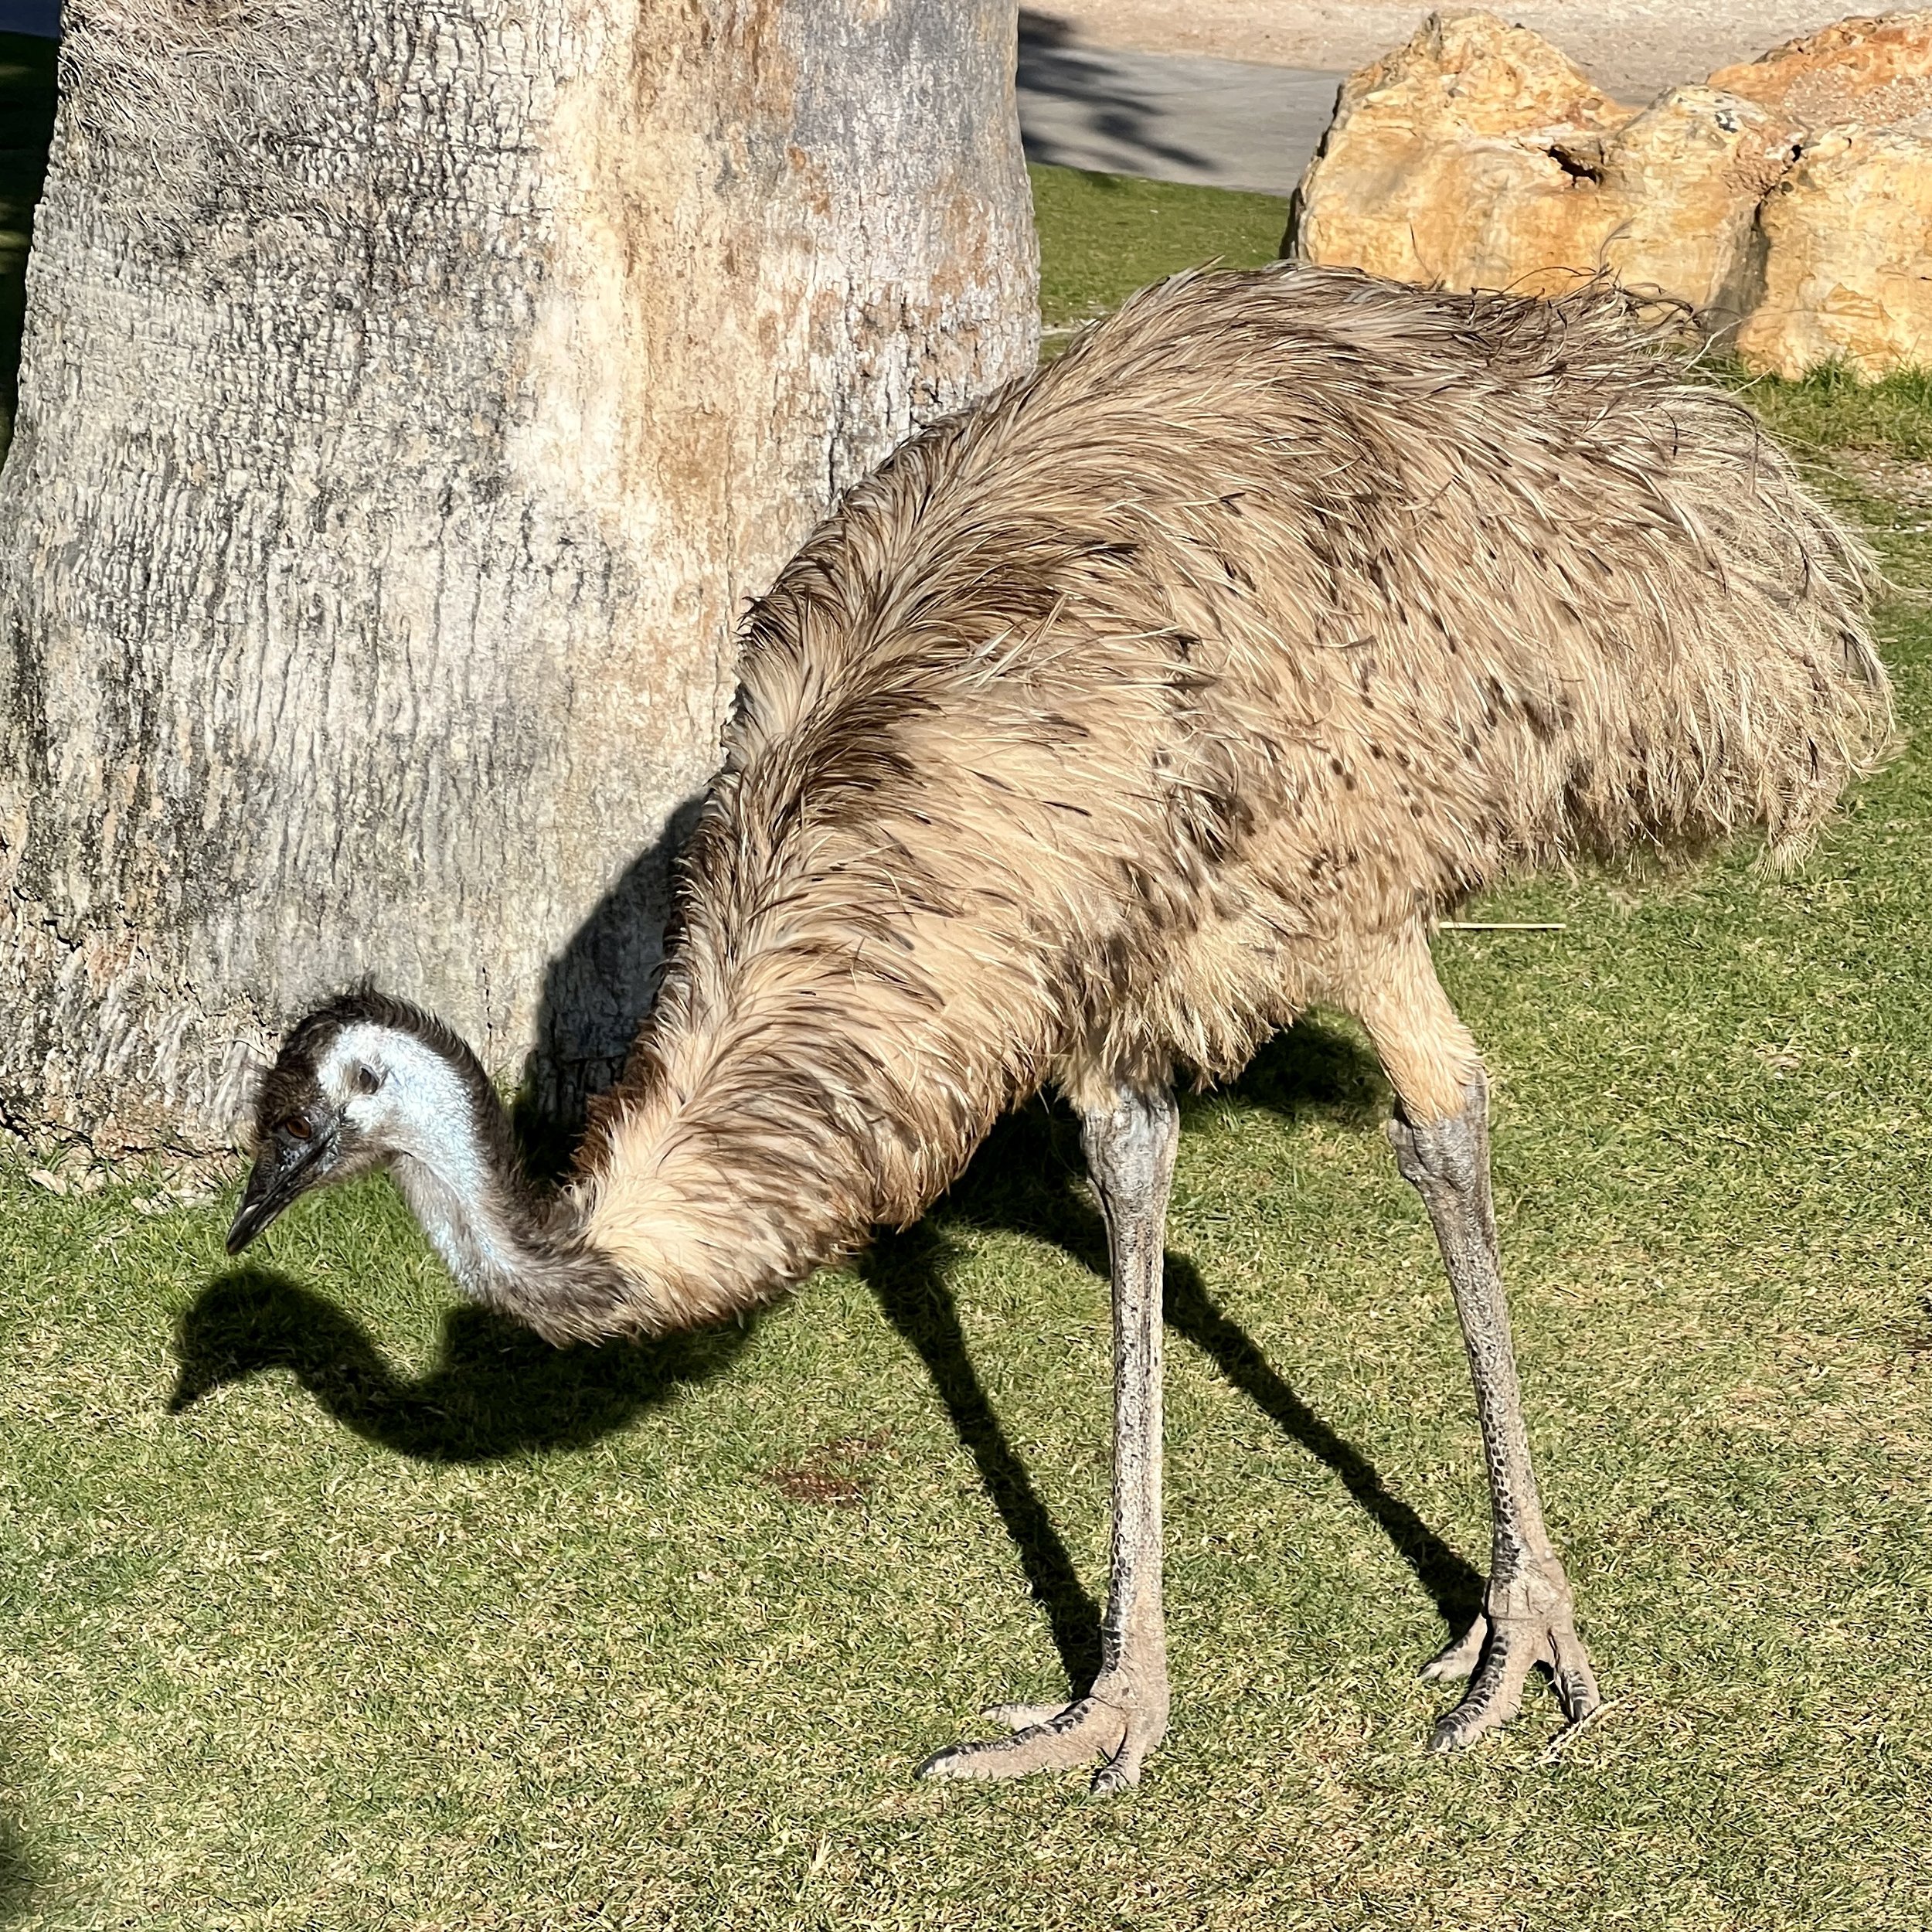 Emus just walking around everywhere